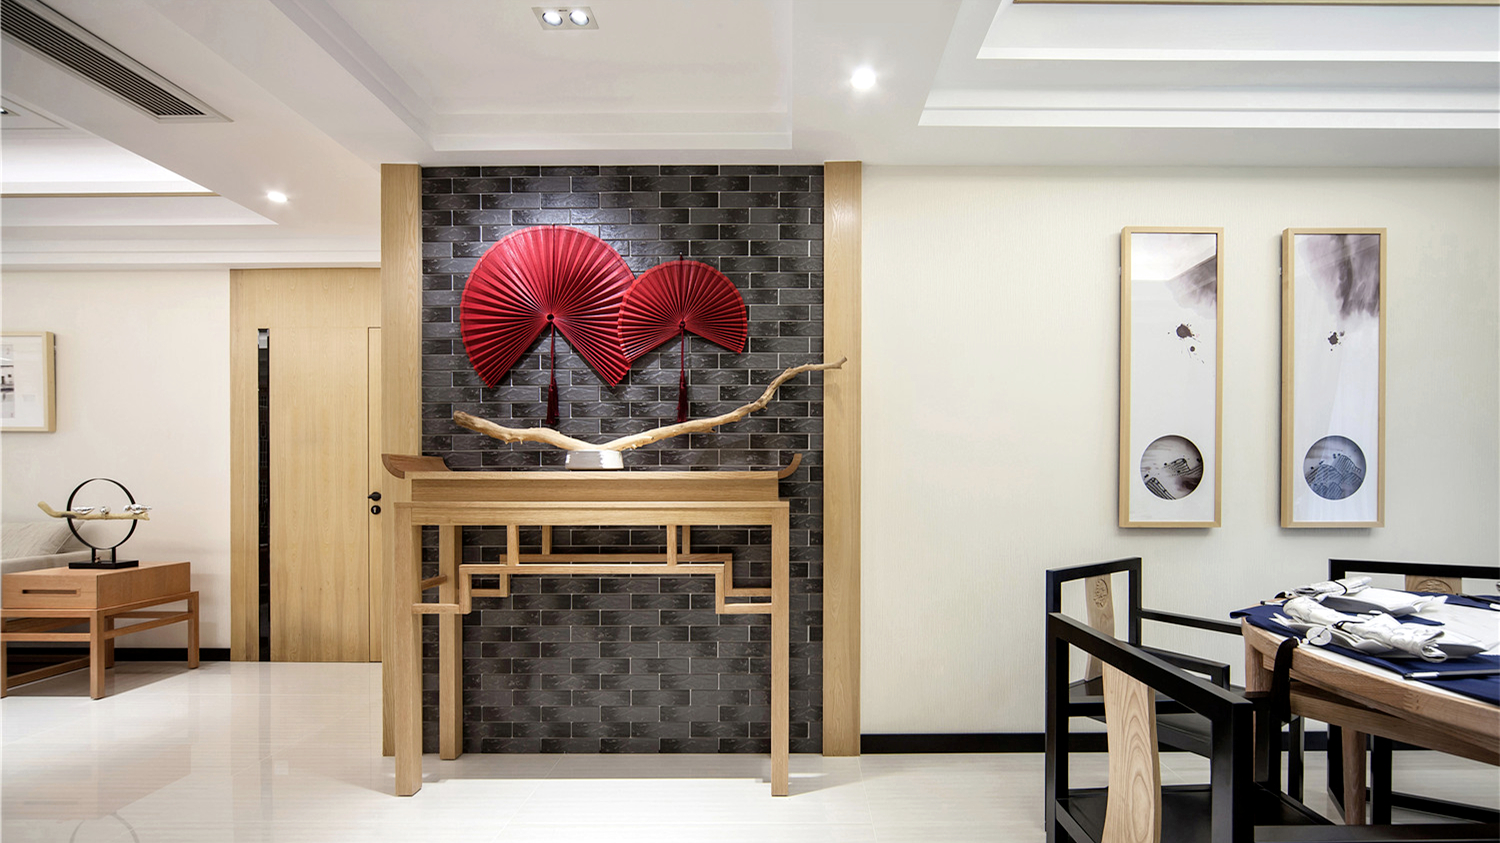 新东方 新中式 现代中式 天汇设计 游小话 客厅图片来自福建天汇设计工程有限公司在THD-天汇设计《清风韵》的分享